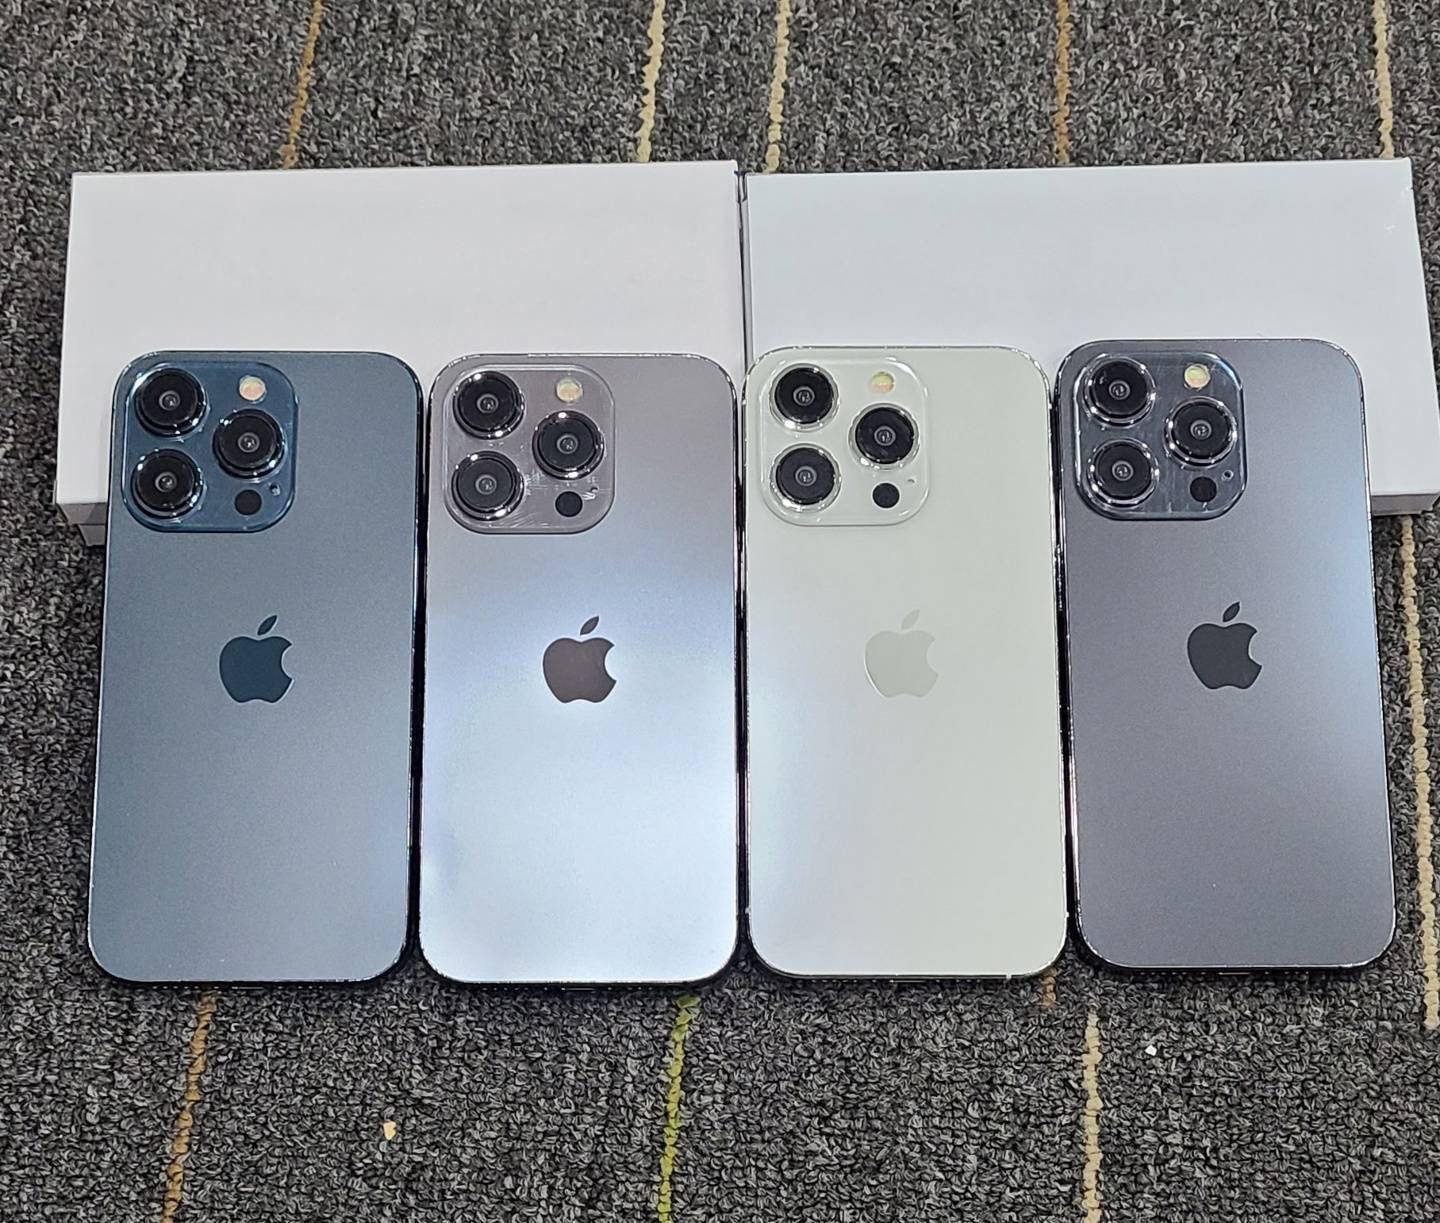 苹果 iPhone 15 和 iPhone 15 Pro 机模展示 新机颜色外观曝光图片 第1张